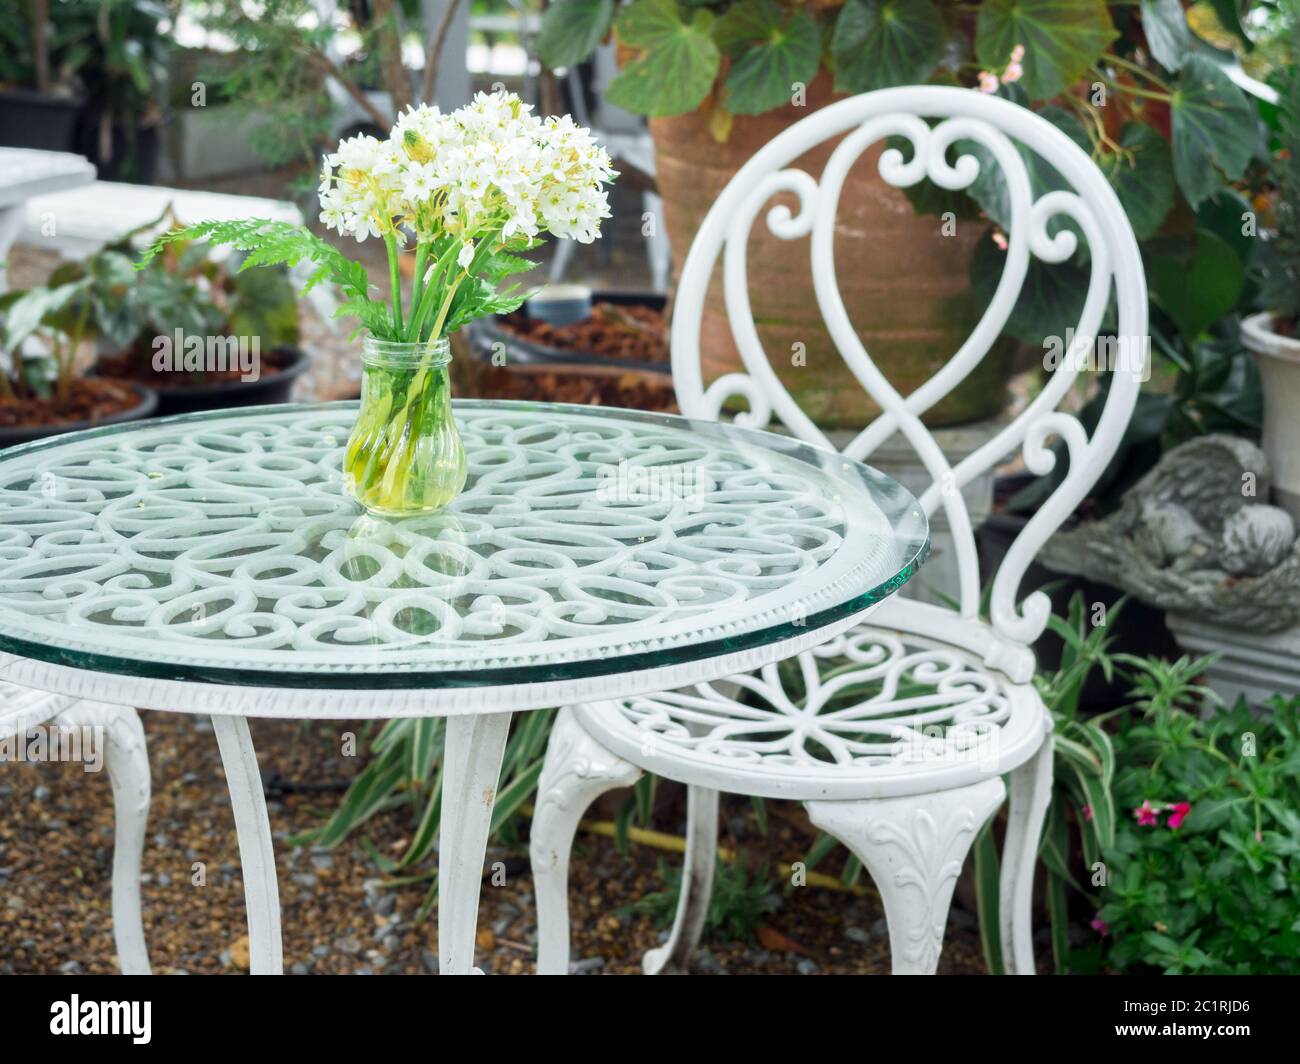 Table en fer forgé blanc avec fleur blanche dans vase sur verre et chaise  de style vintage dans le jardin Photo Stock - Alamy